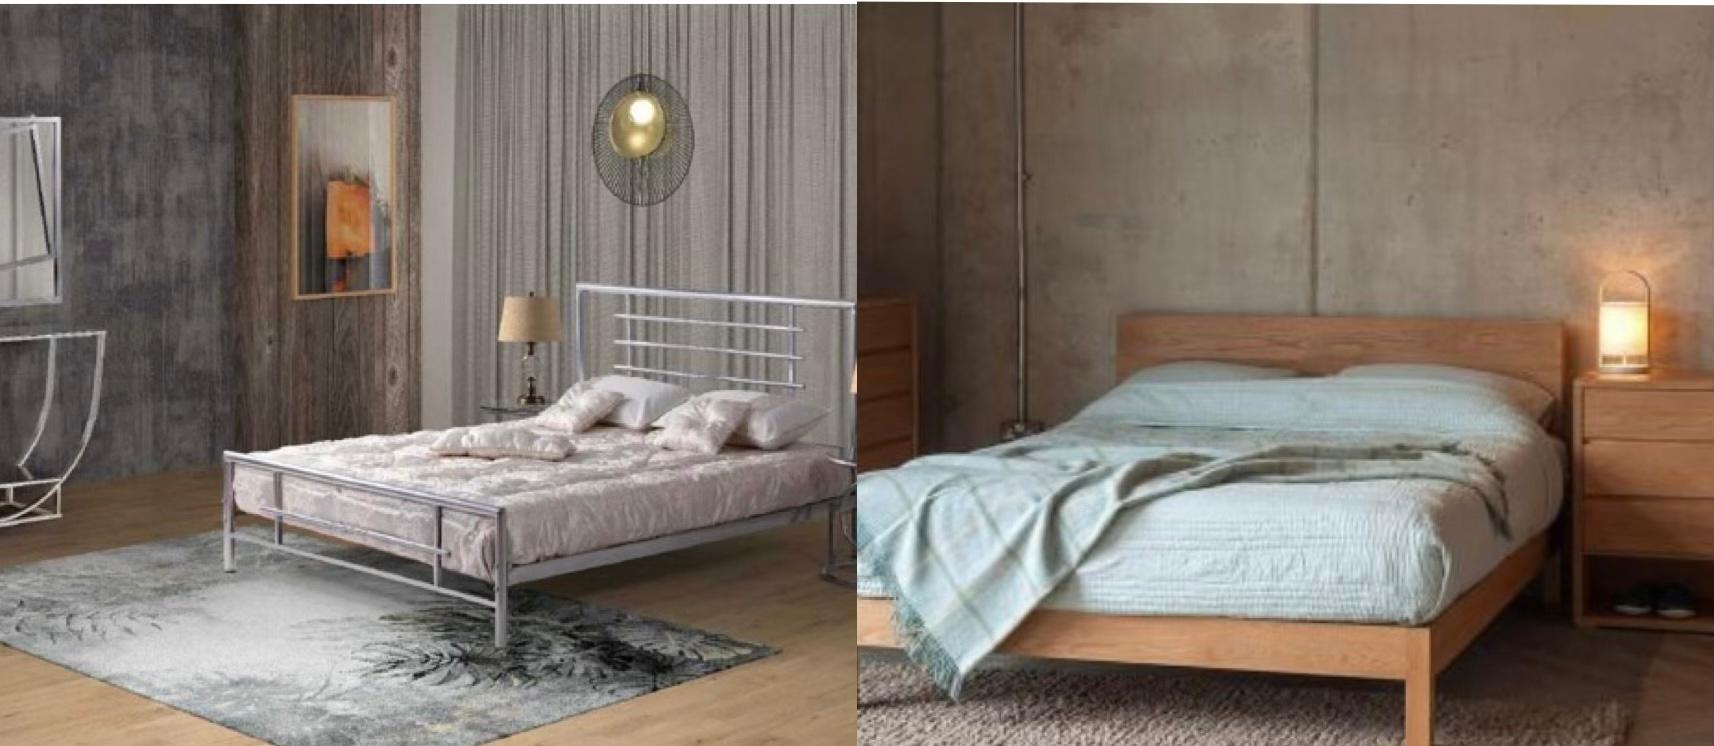 تخت خواب چوبی بخرم یا فلزی؟! | مقایسه تخت خواب چوبی و فلزی با یکدیگر